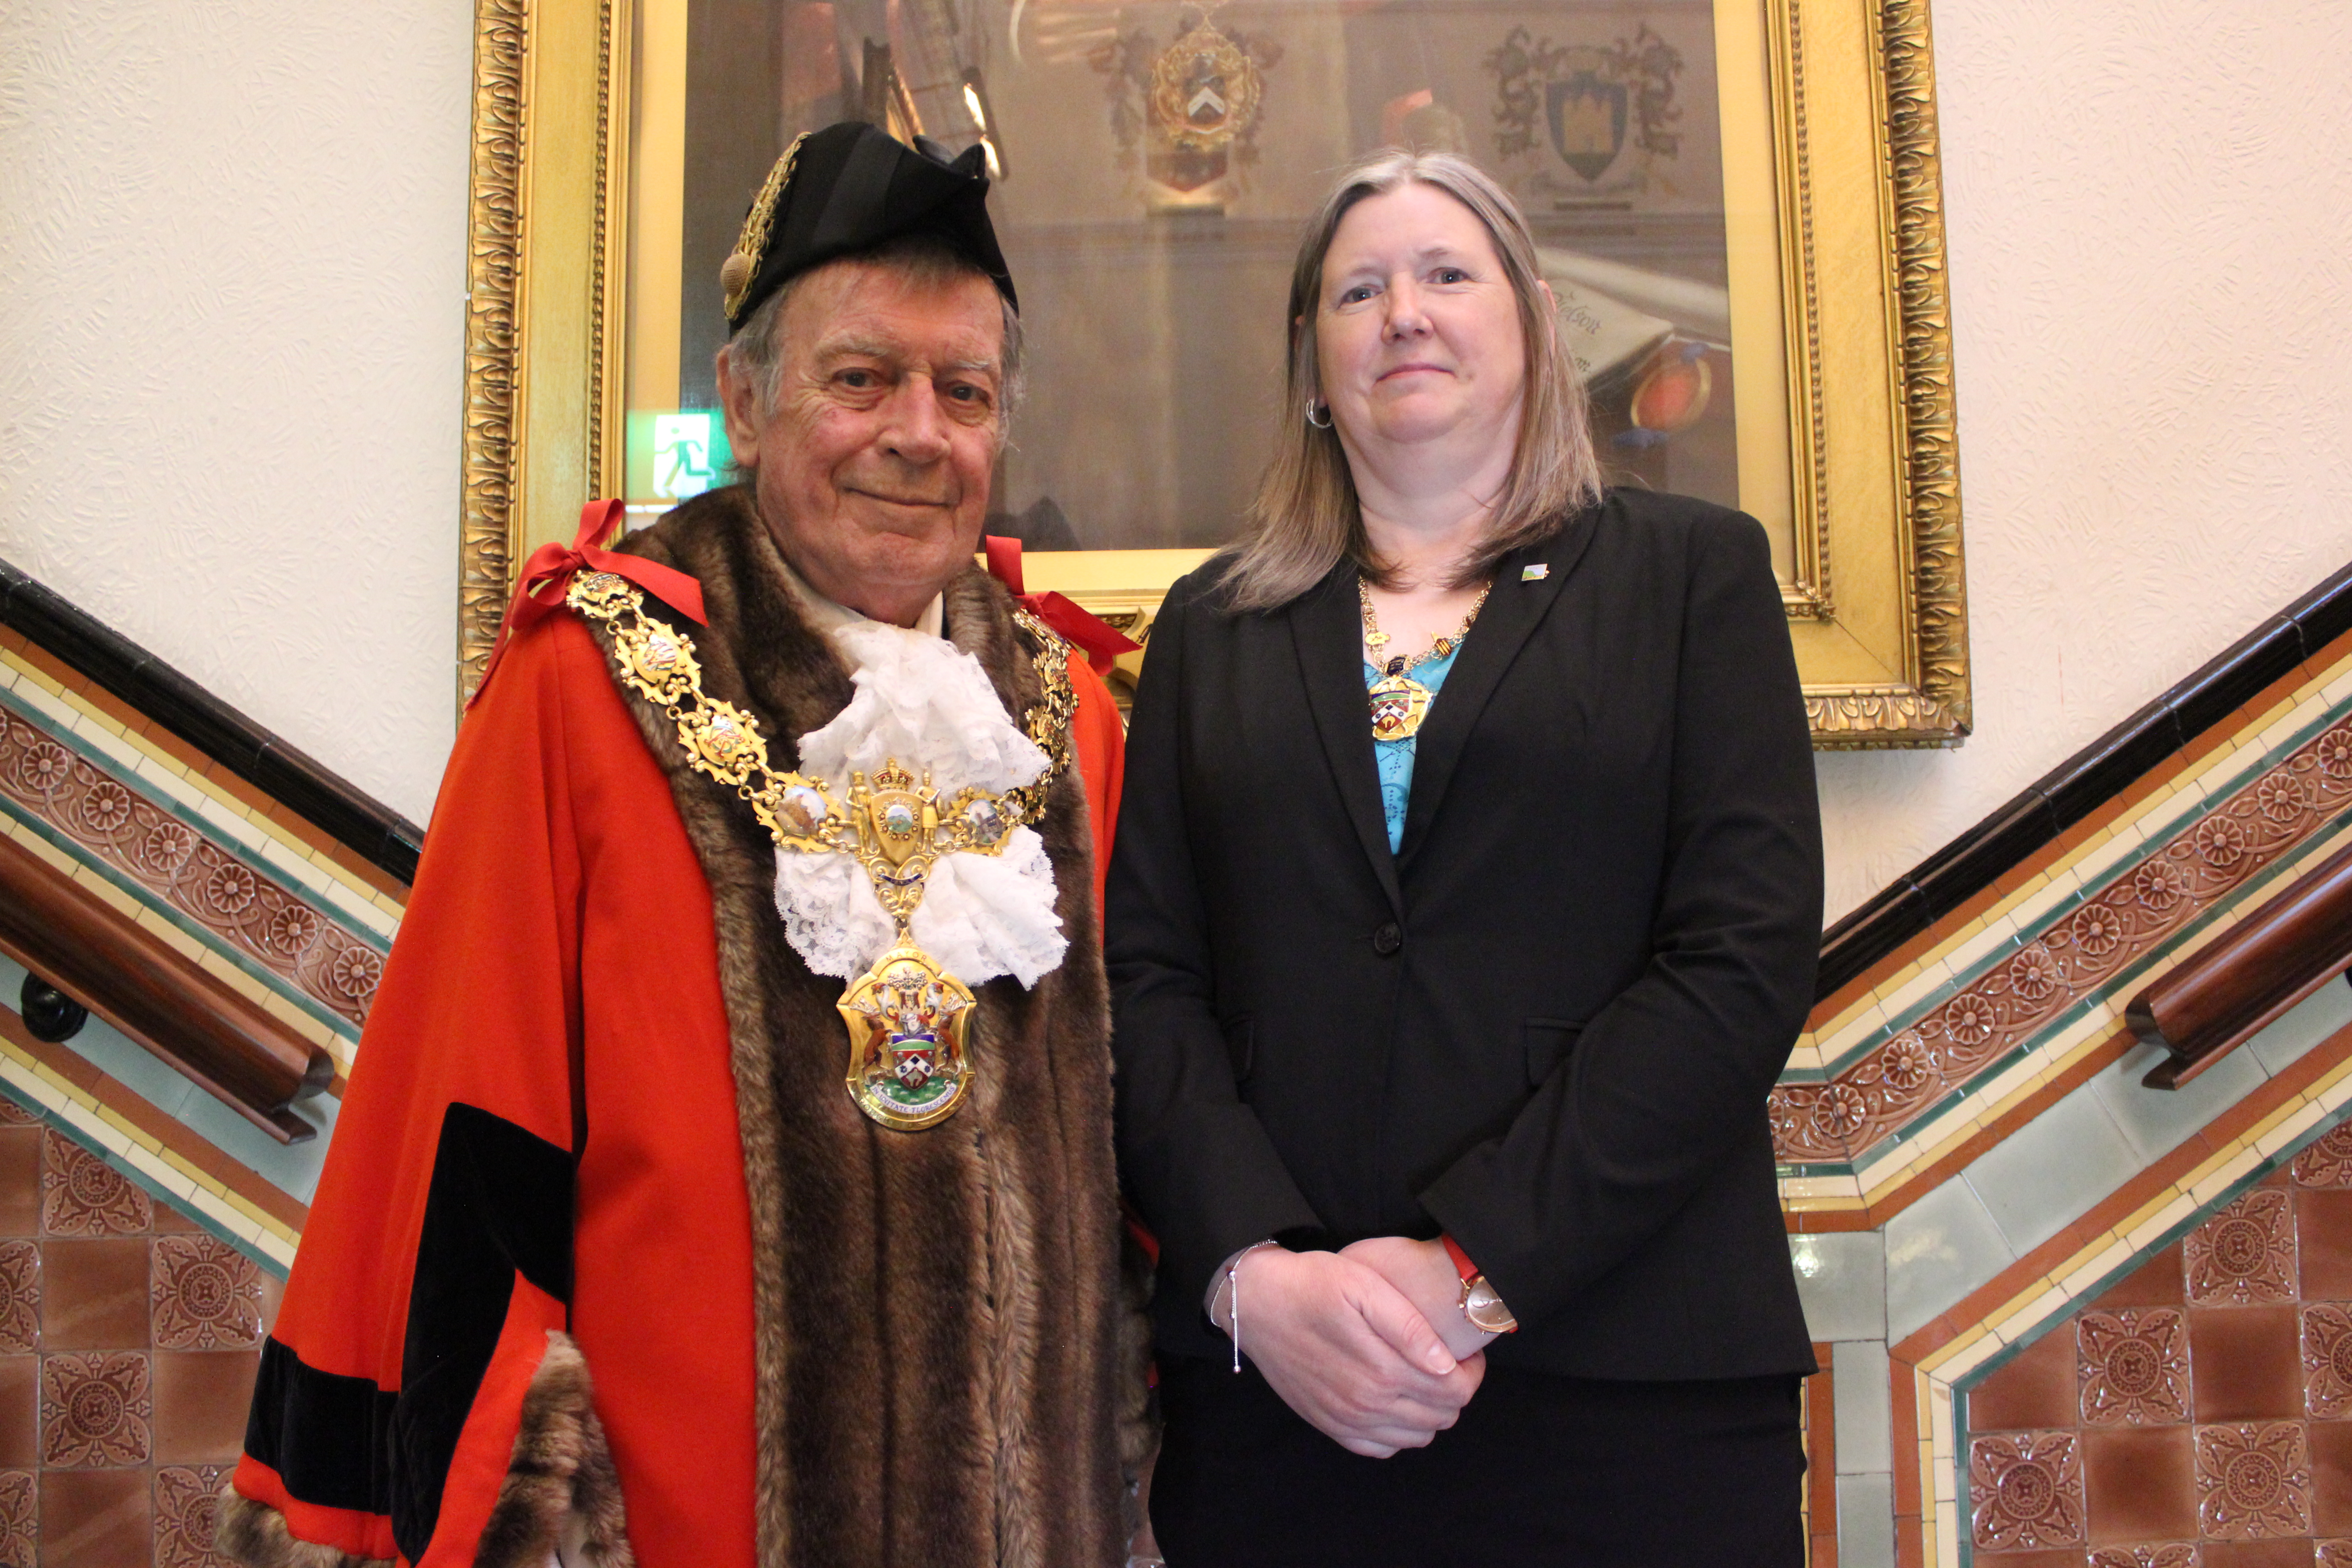 Mayor and Mayoress of Pendle.